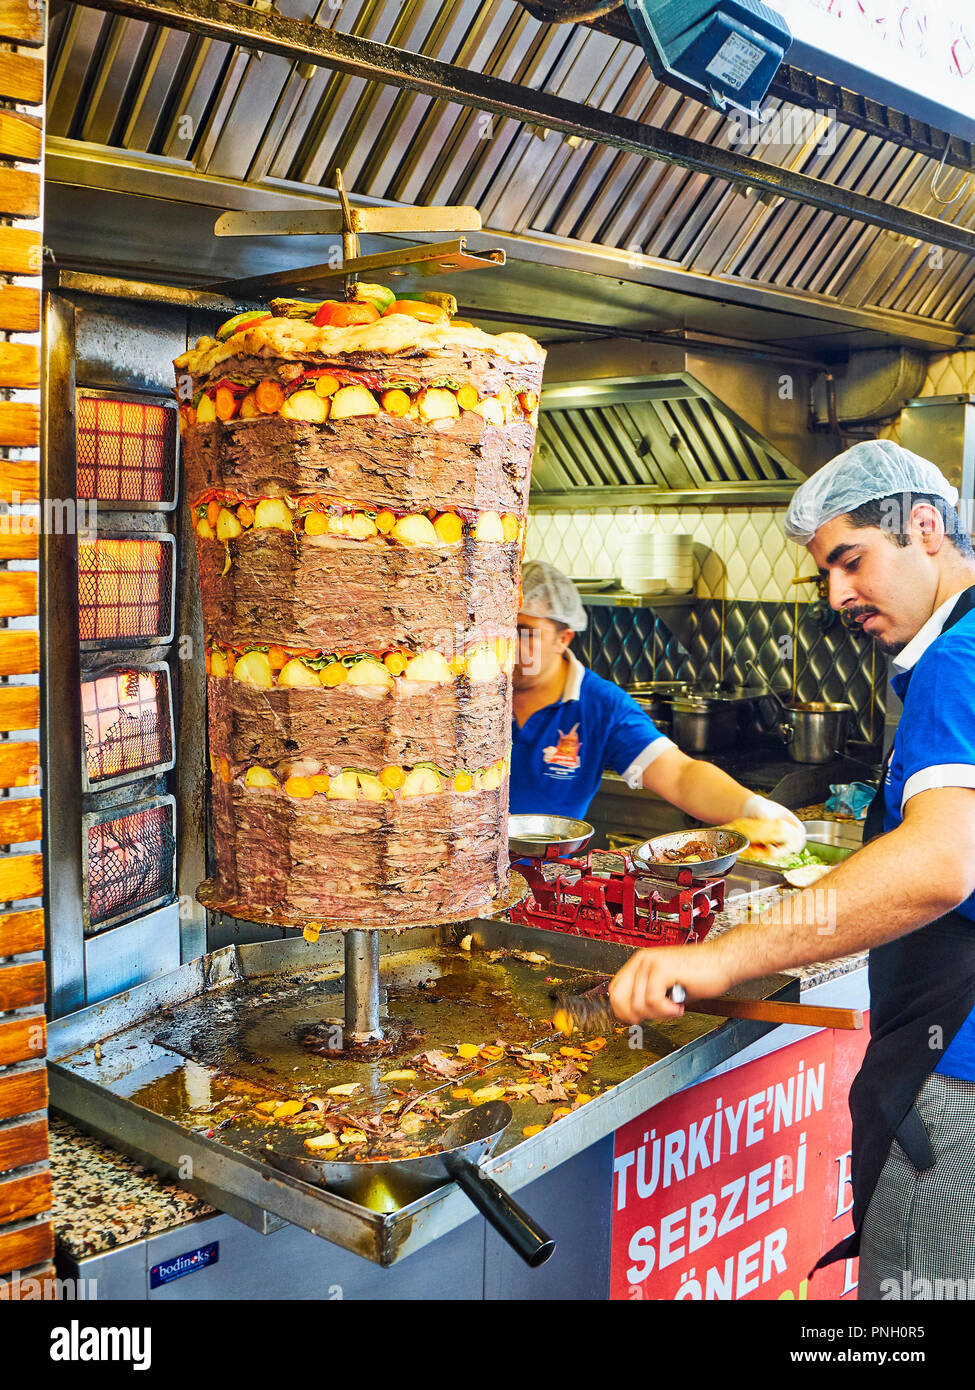 Bodrum, Turquie - le 5 juillet 2018. Cuisine la cuisine, couper et mettre en balance les rations alimentaires d'un Doner kebab turc traditionnel dans une stalle de rue. Banque D'Images